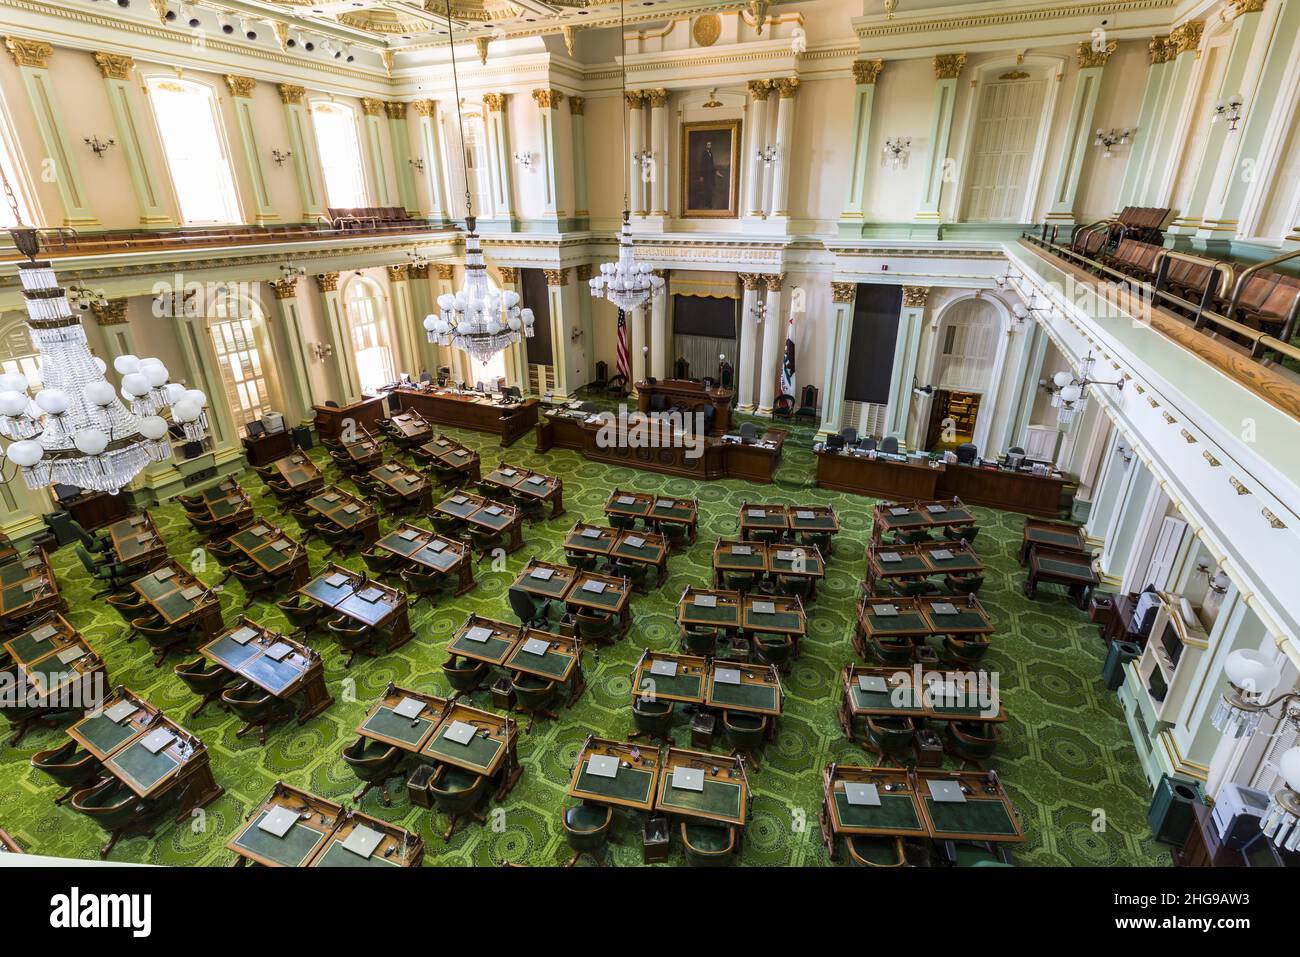 Innenraum des Sitzungssaals der kalifornischen Gesetzgebung im Gebäude der staatlichen Hauptstadt am 4. Juli 2014 in Sacramento, Kalifornien, USA. Stockfoto